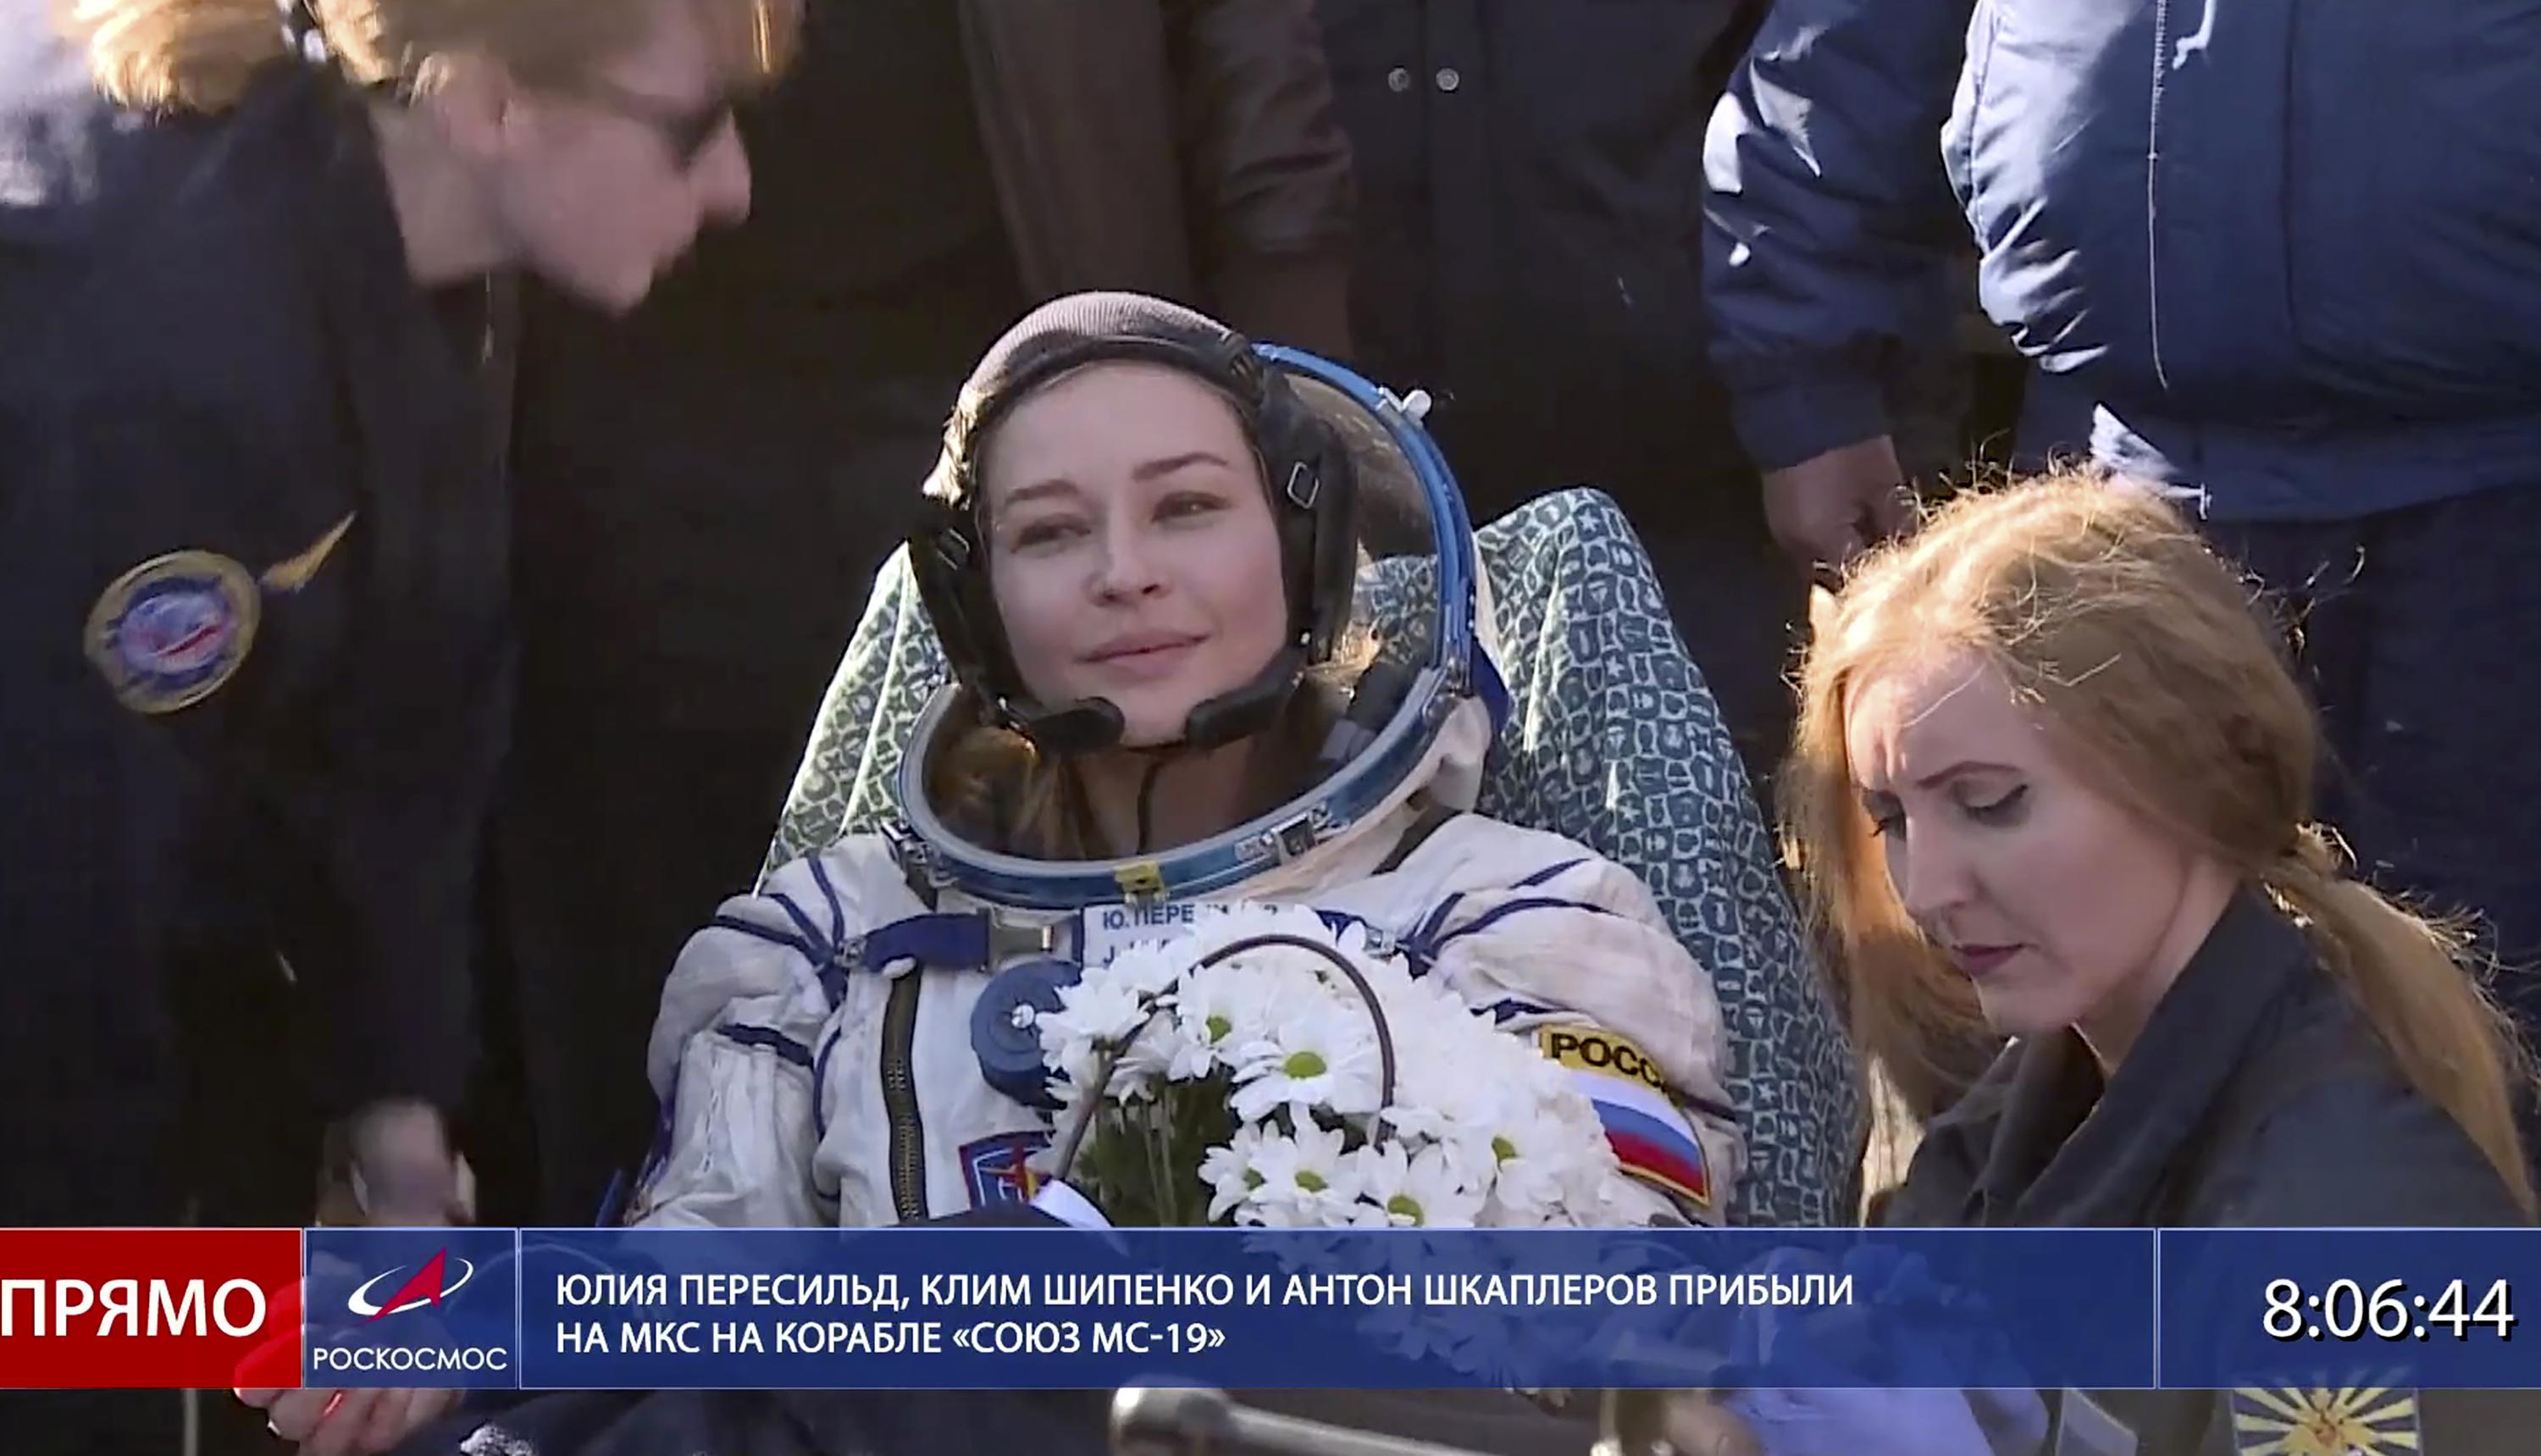 Российские кинематографисты приземлились после съемок на космической станции